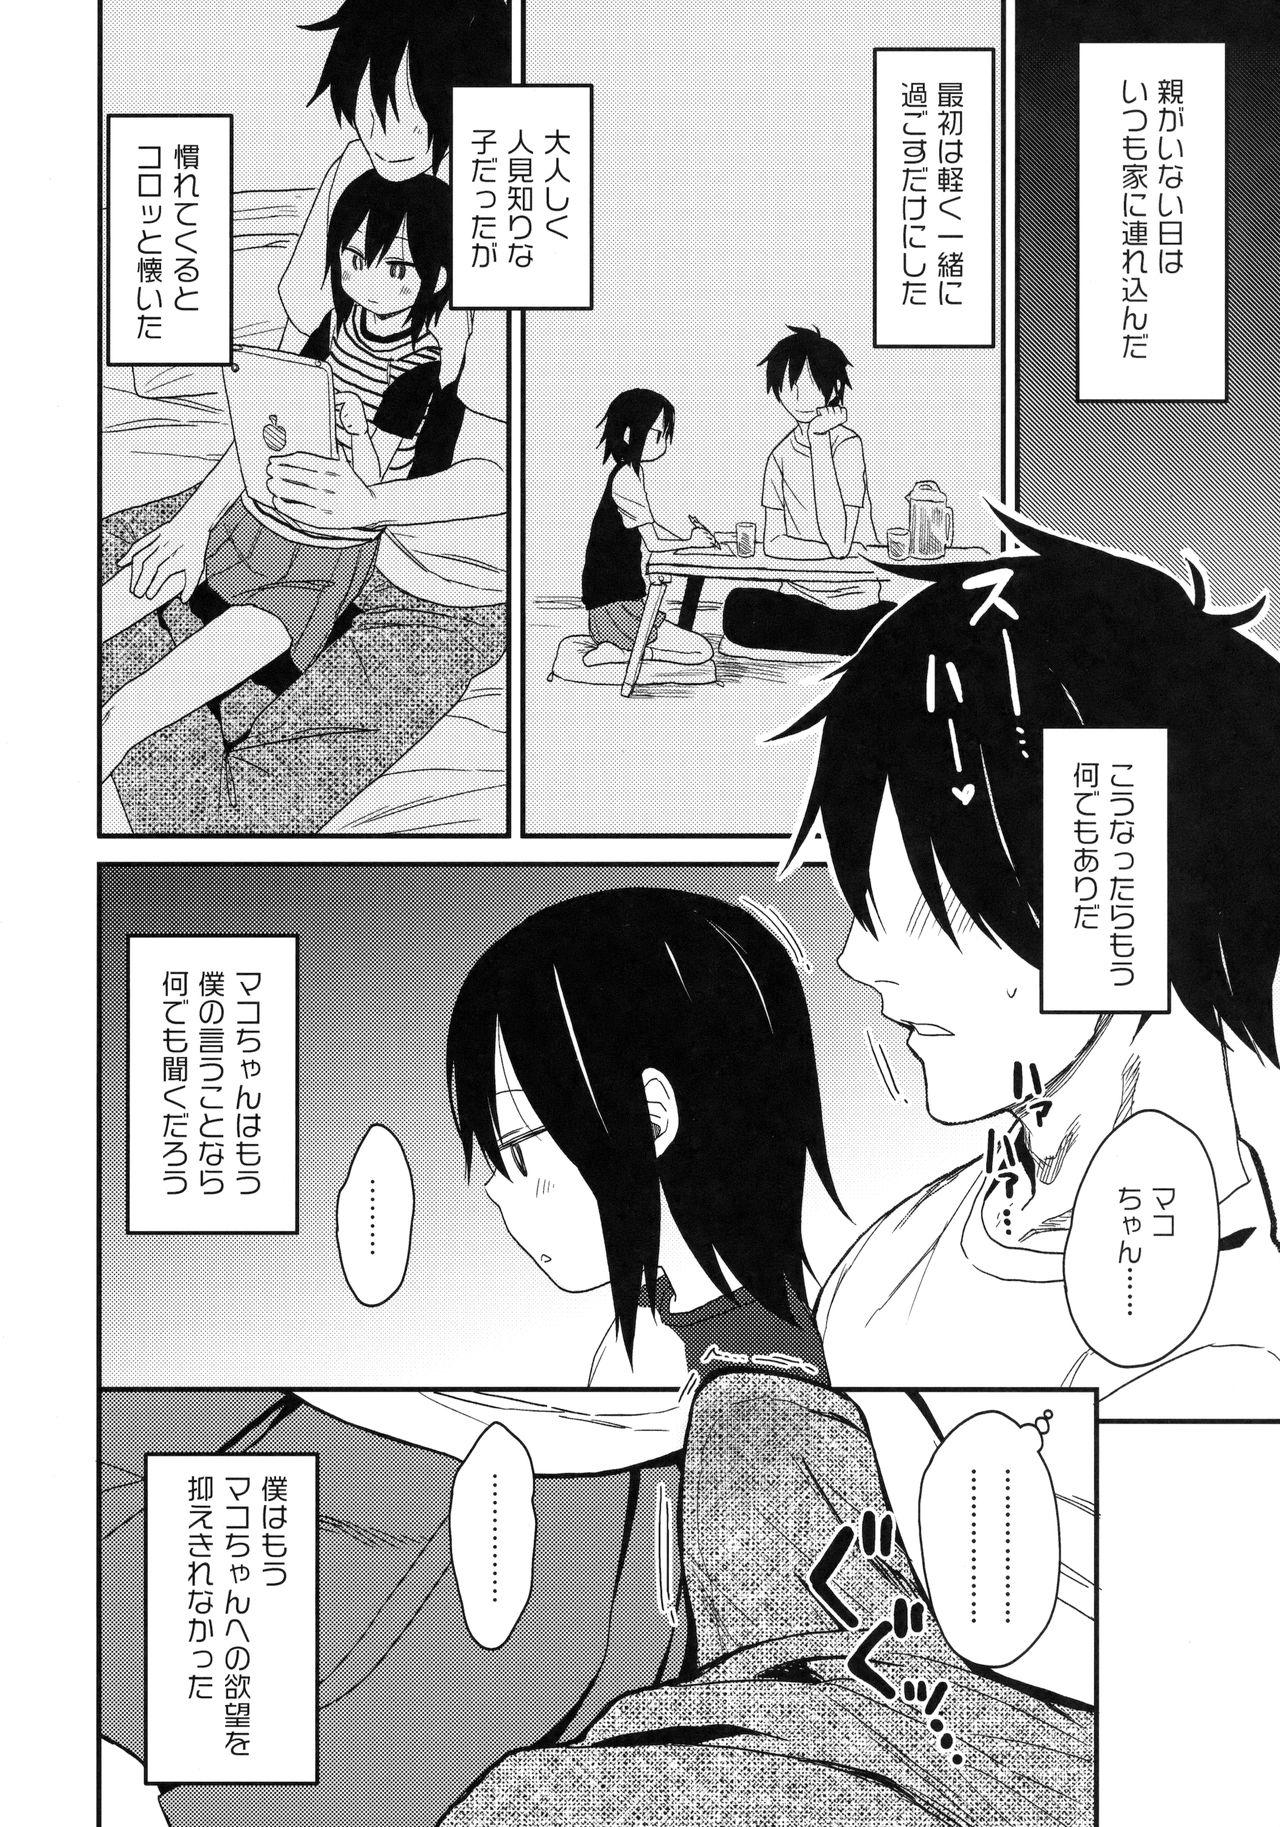 Letsdoeit Tonari no Mako-chan Vol. 1 Hermosa - Page 11